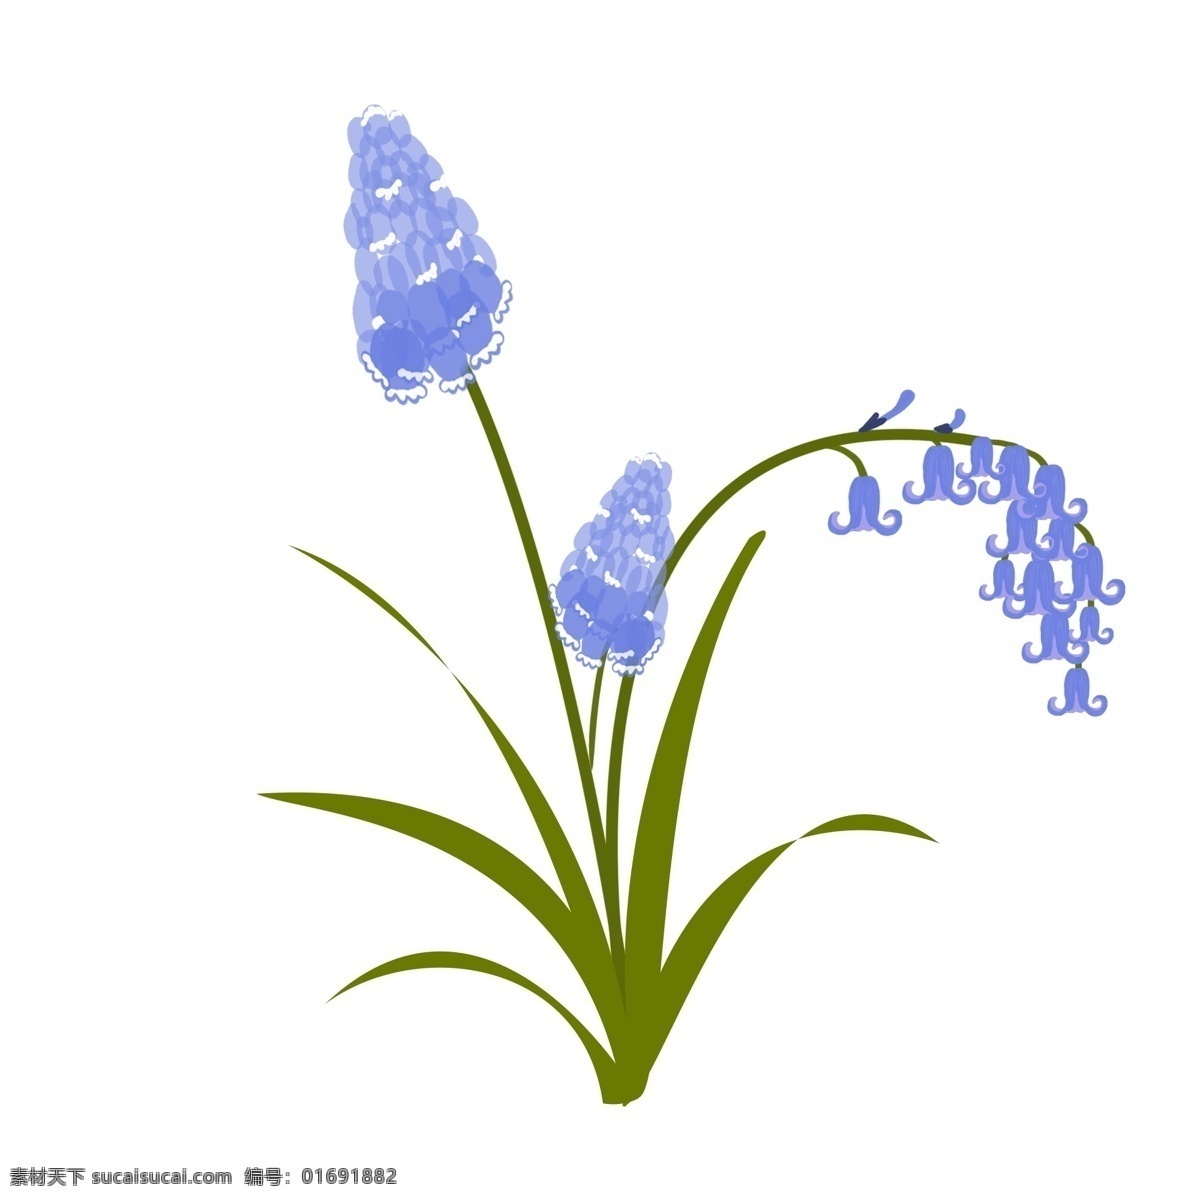 植物 风信子 蓝紫色 花 绿叶 手绘